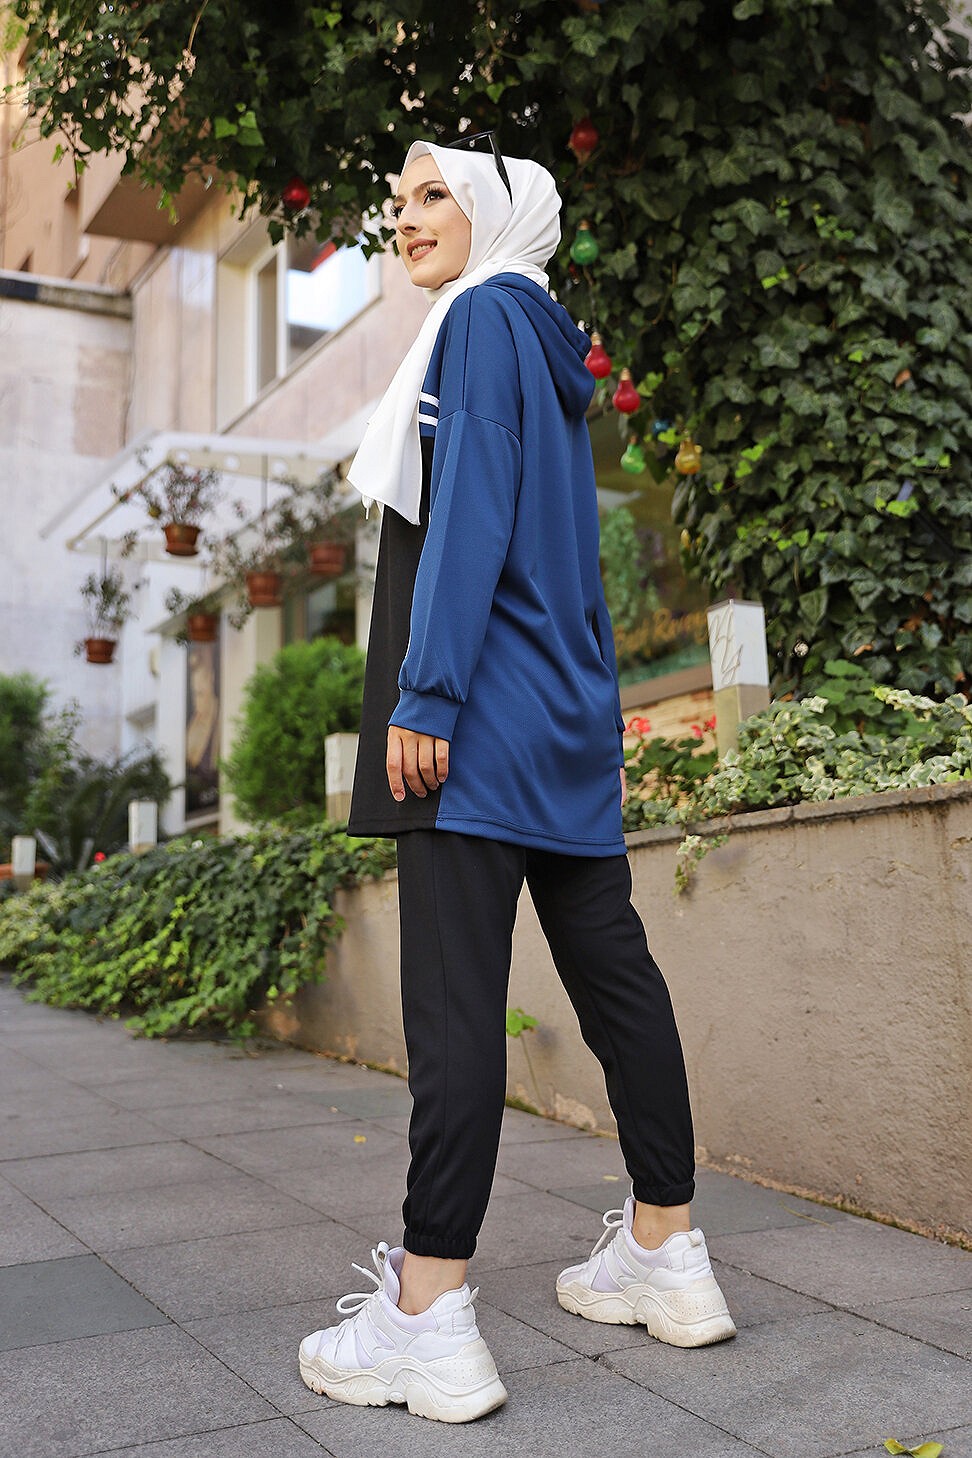 Survêtement femme (Boutique Vêtement Sport pour Hijab) - Couleur noir et  gris - Prêt à porter et accessoires sur